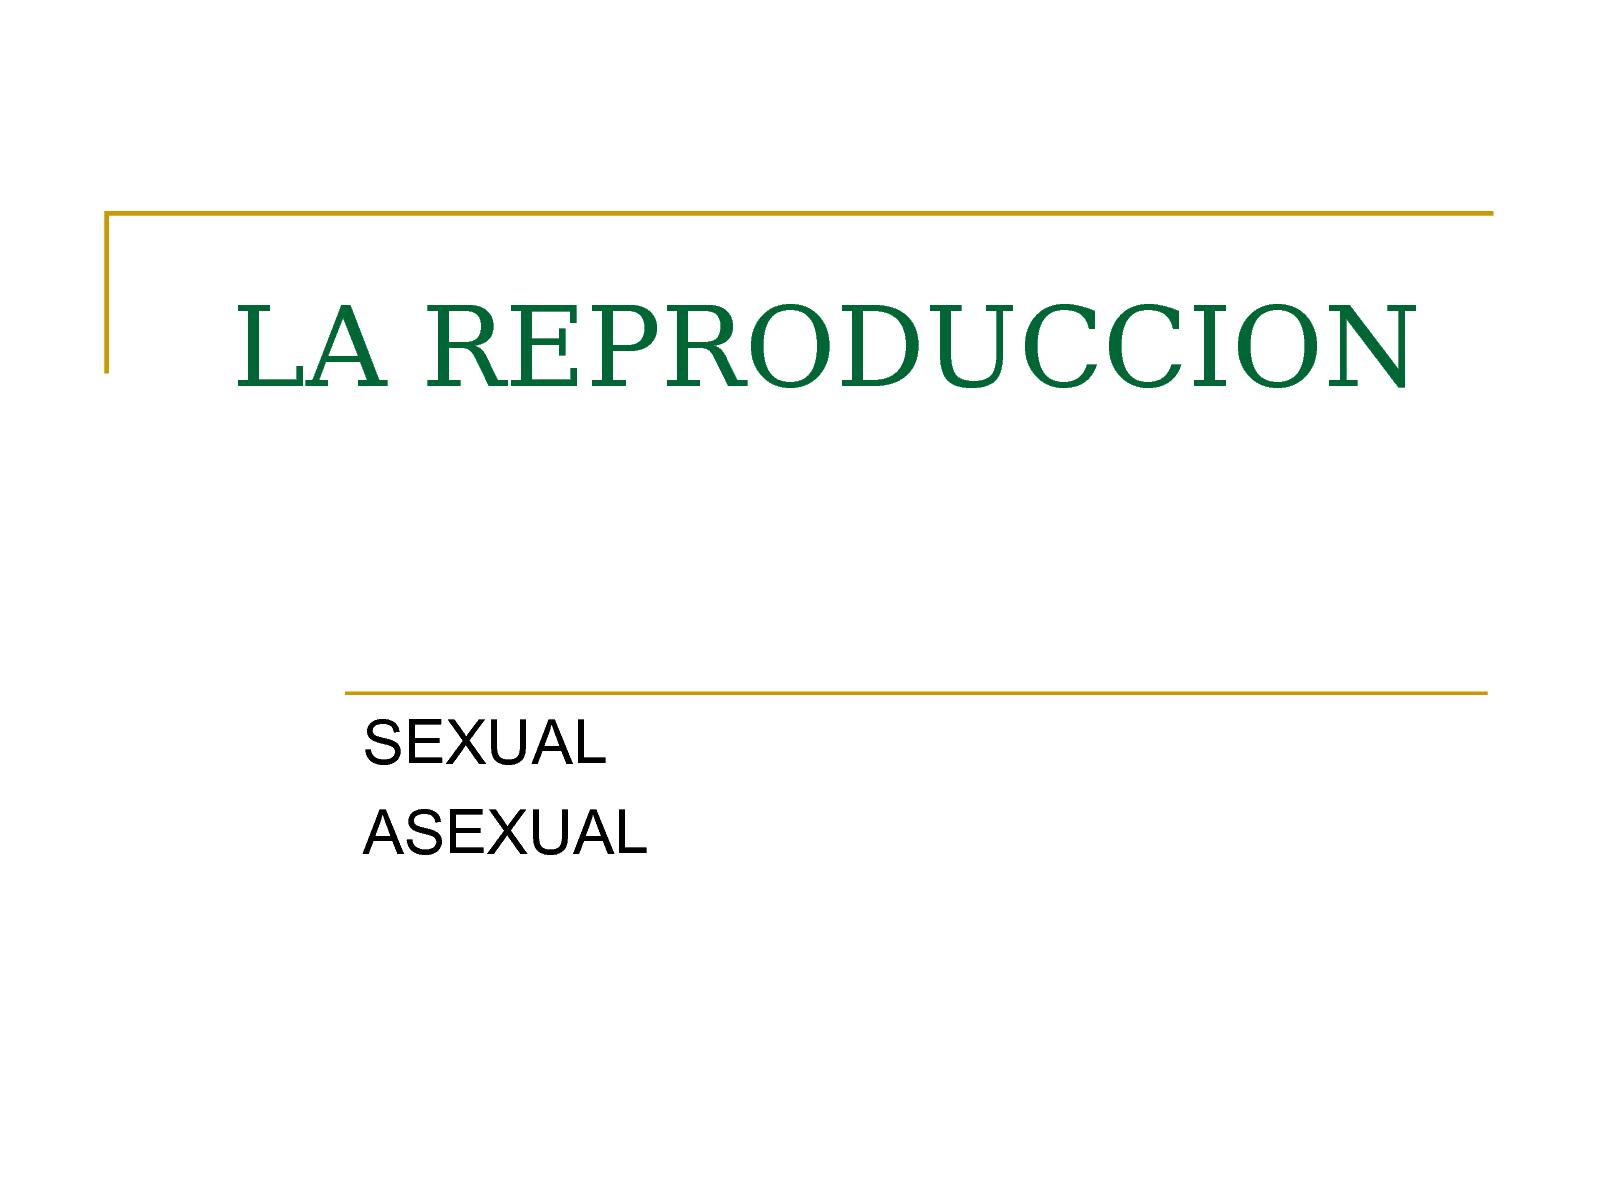 Reproducci n sexual y asexual